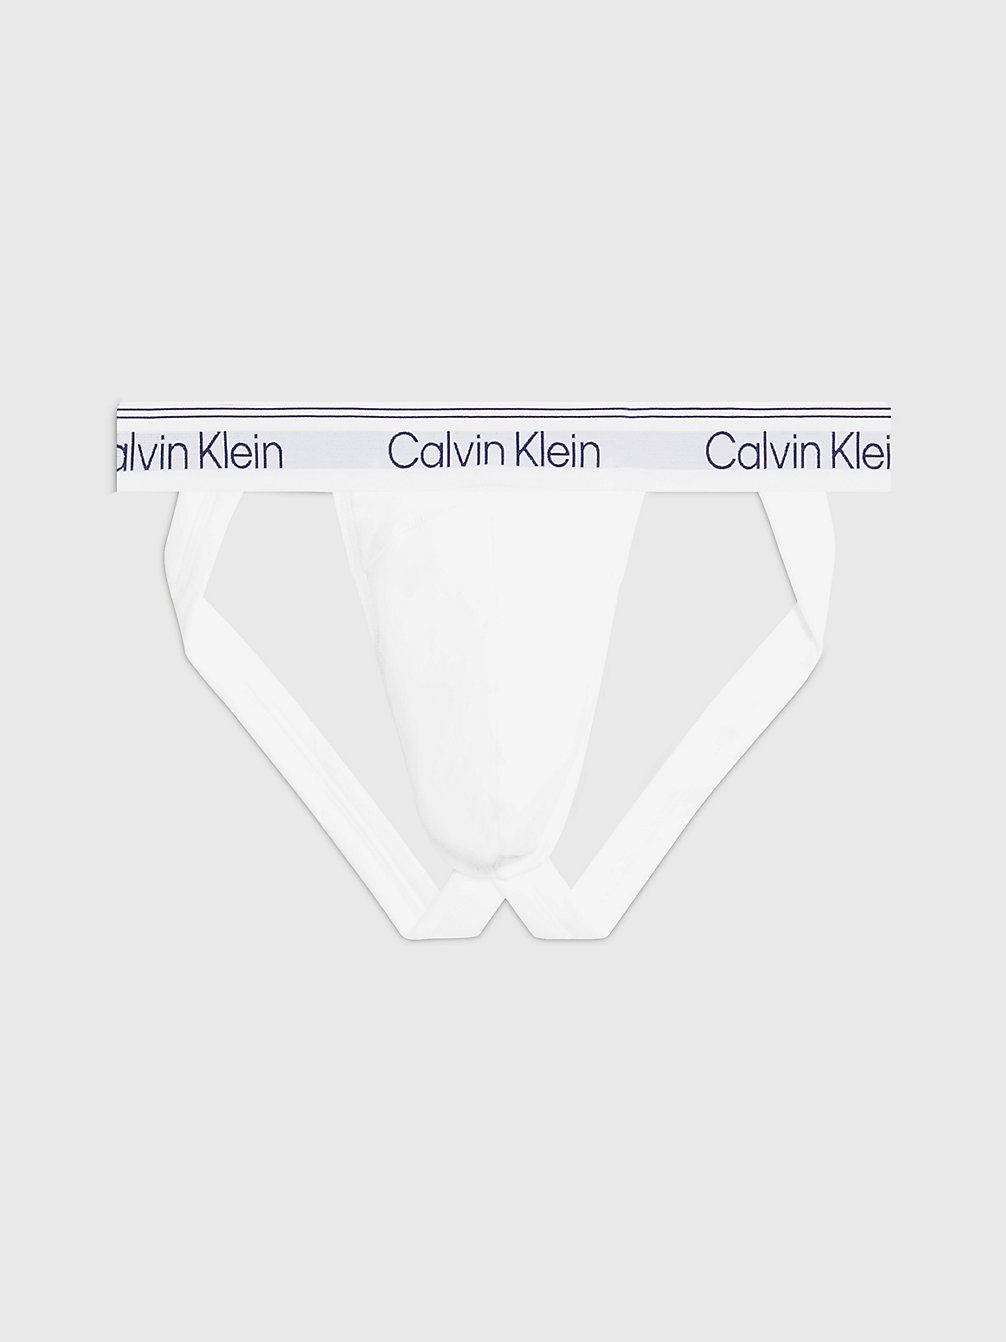 WHITE > Jockstrap - Athletic Cotton > undefined Herren - Calvin Klein